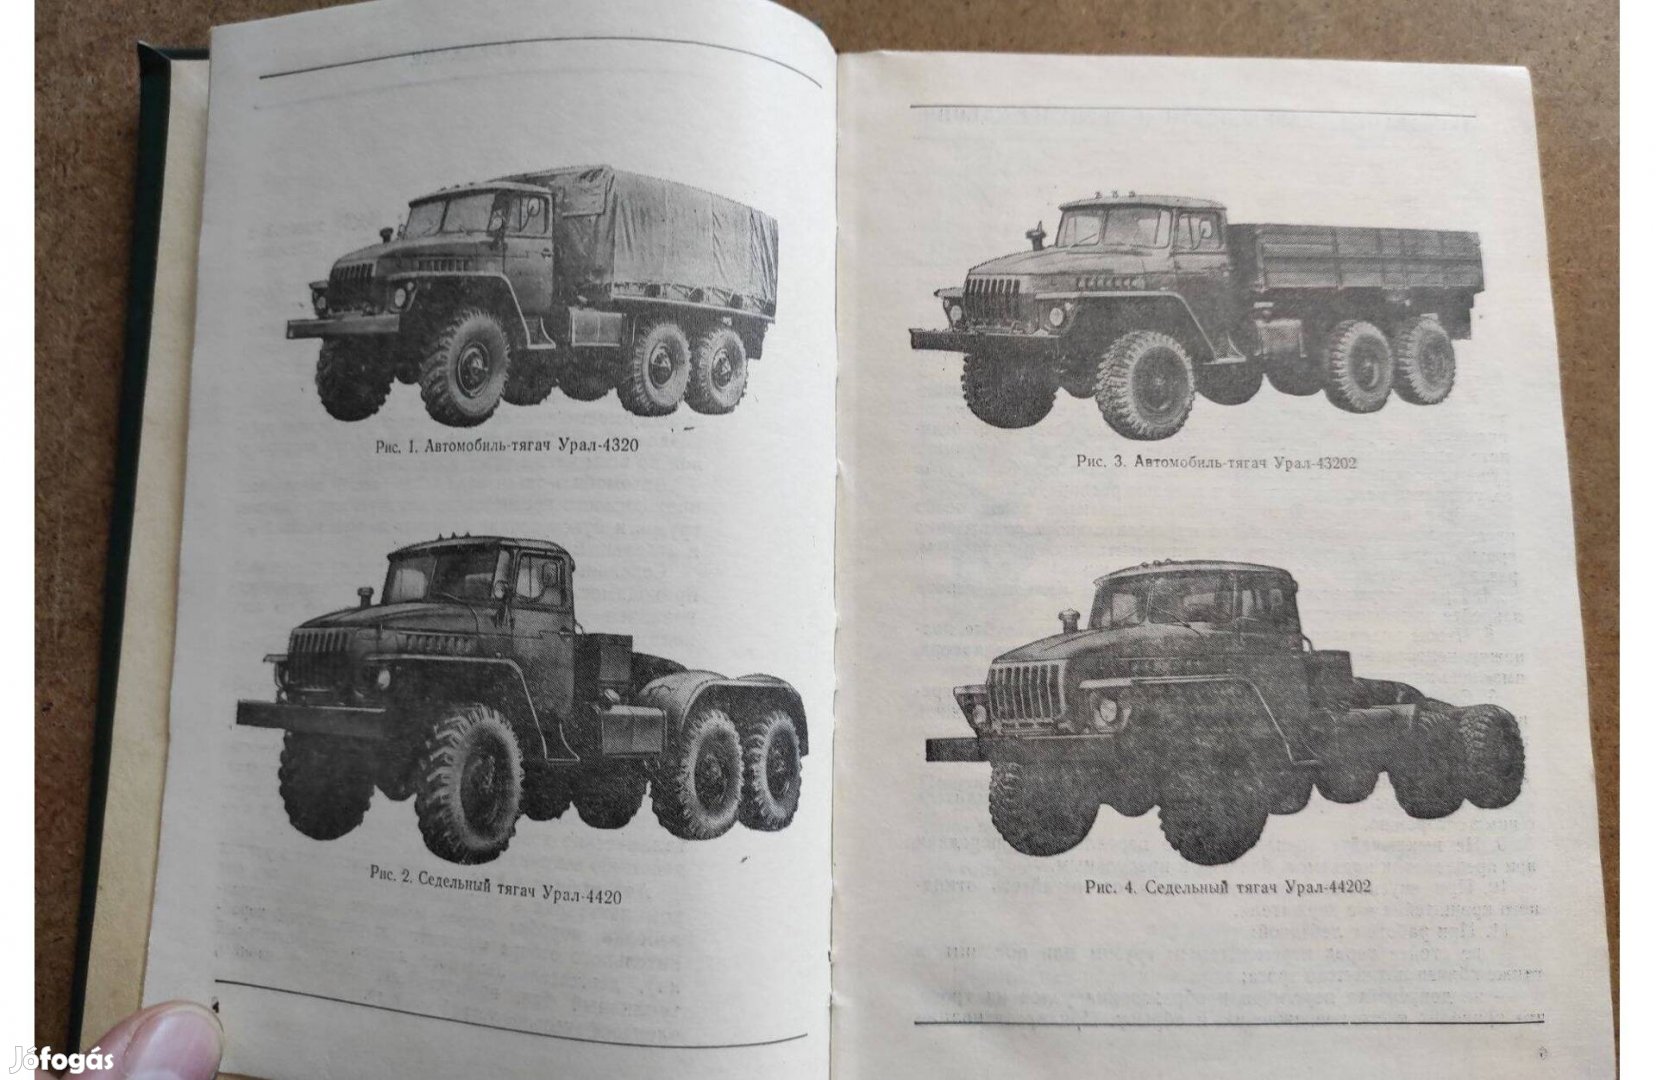 Ural 4320 dízel teherautó javítási kézikönyv